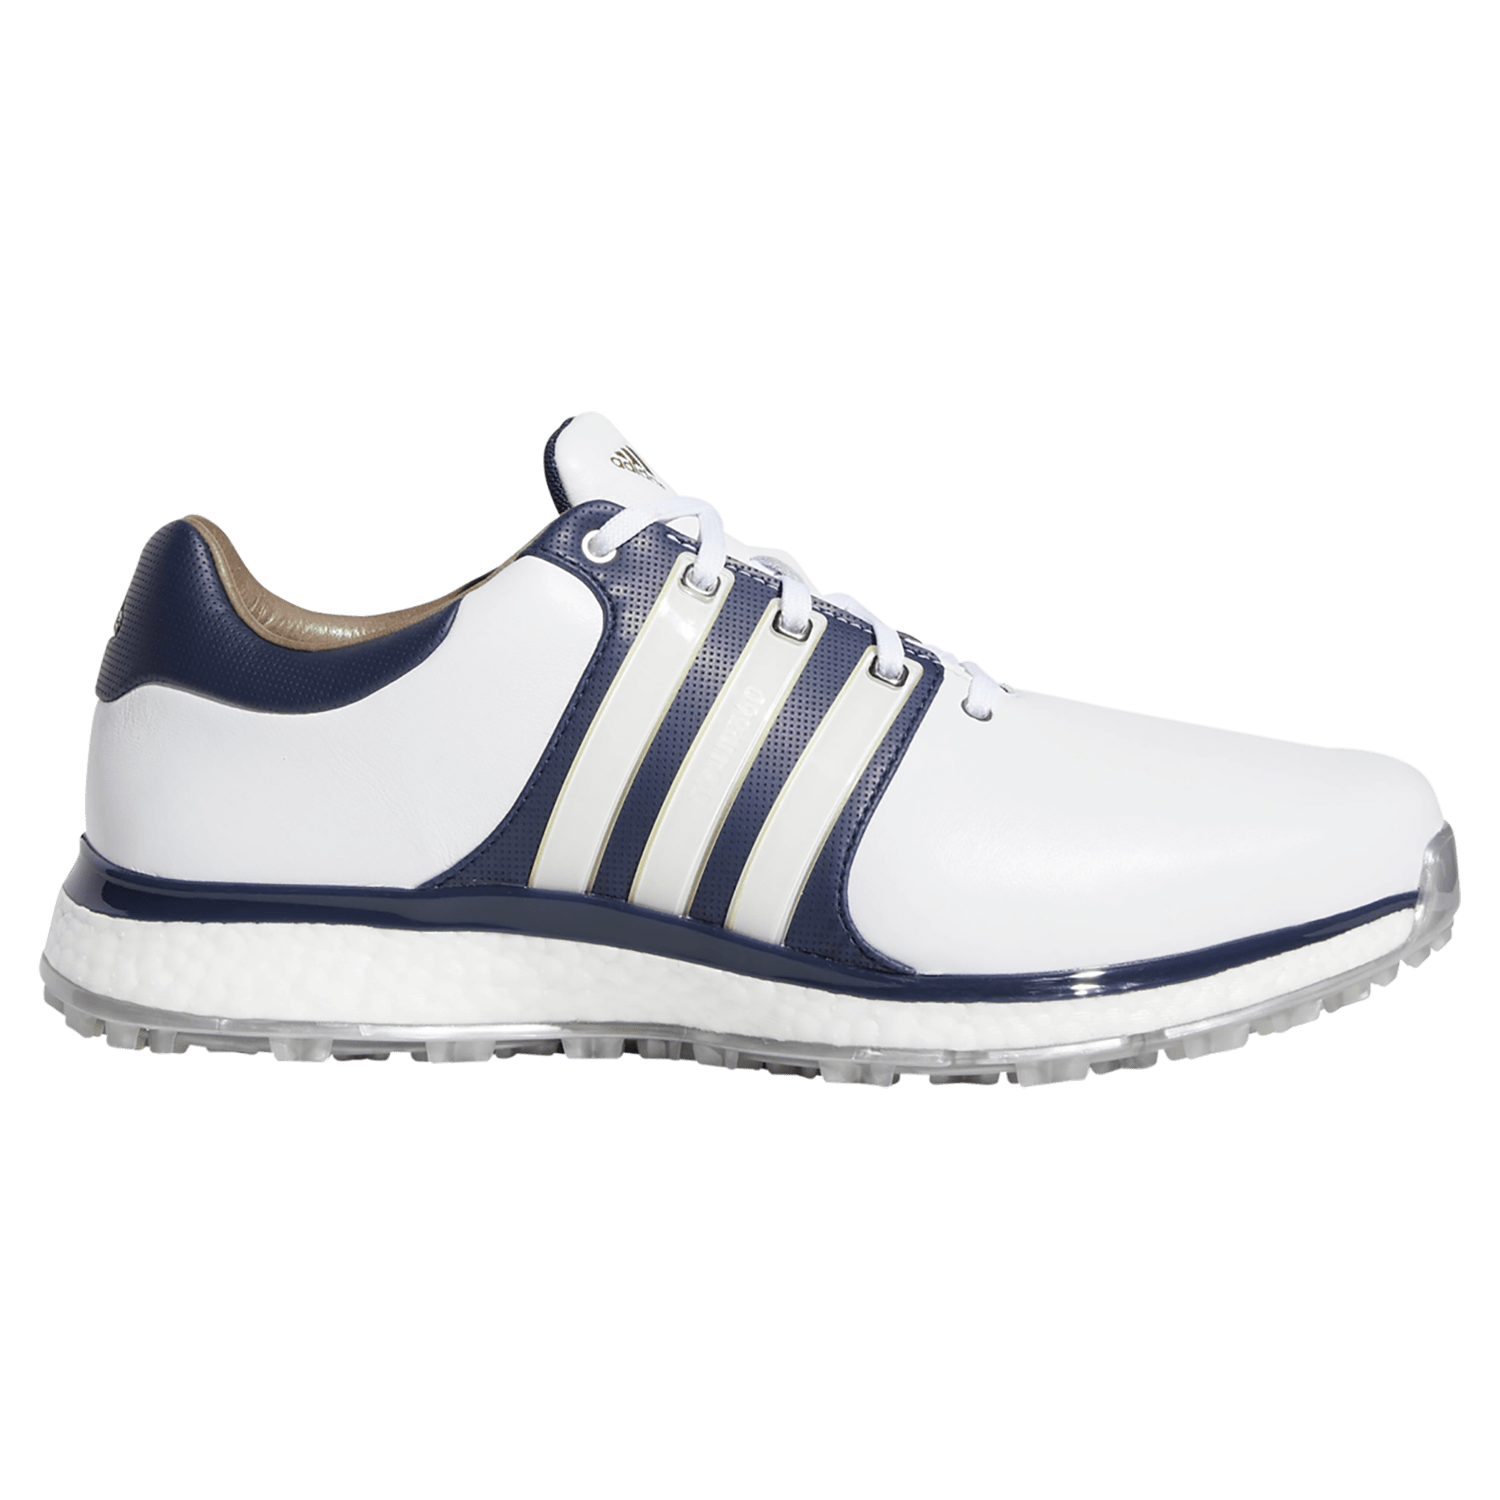 adidas men's tour360 xt sl golf shoes